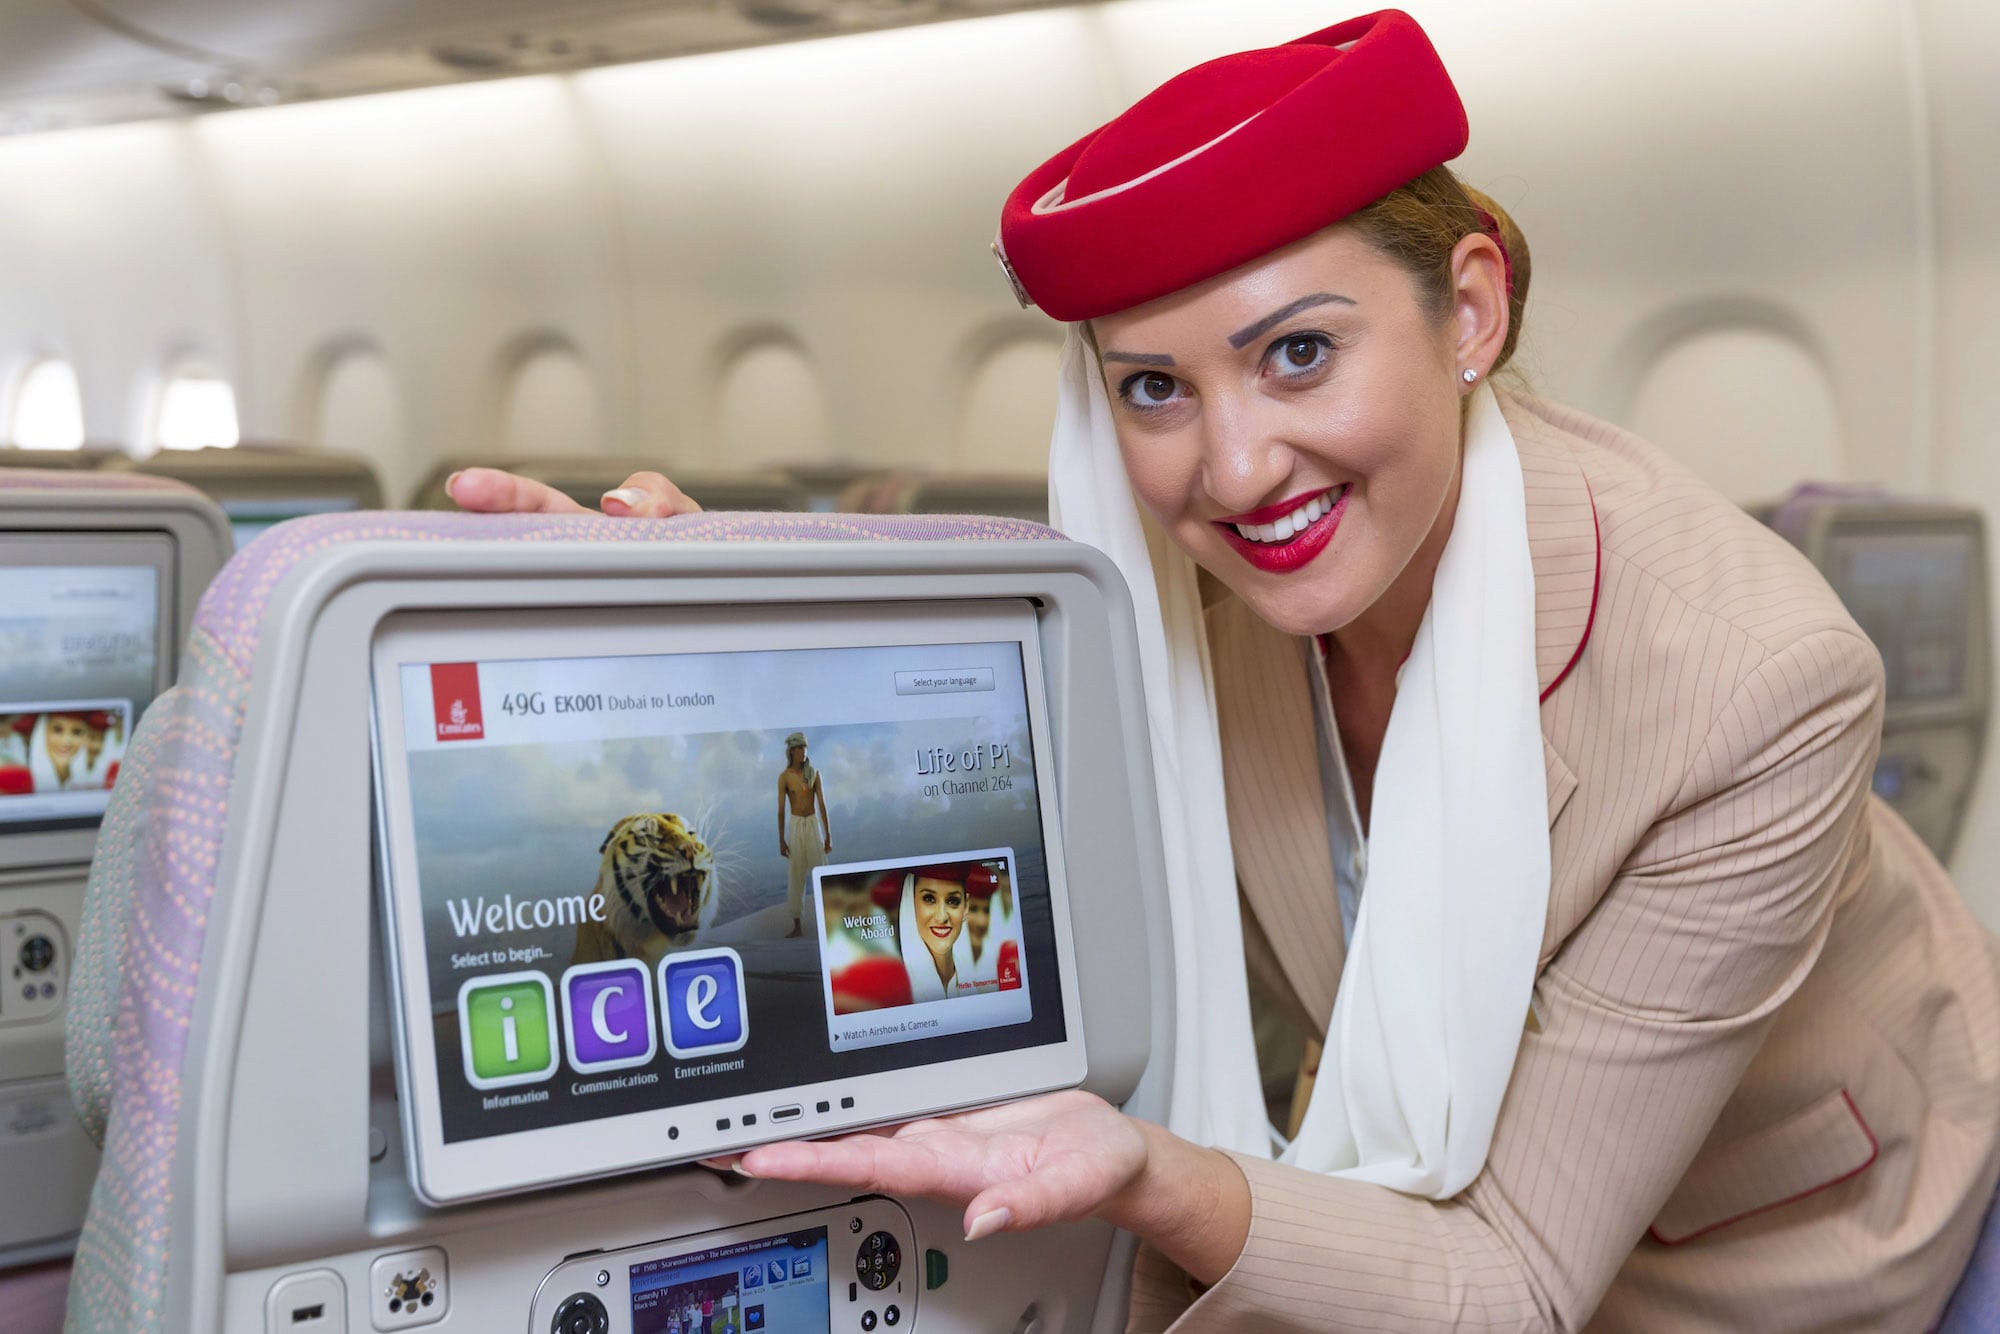 Emirates in-flight entertainment